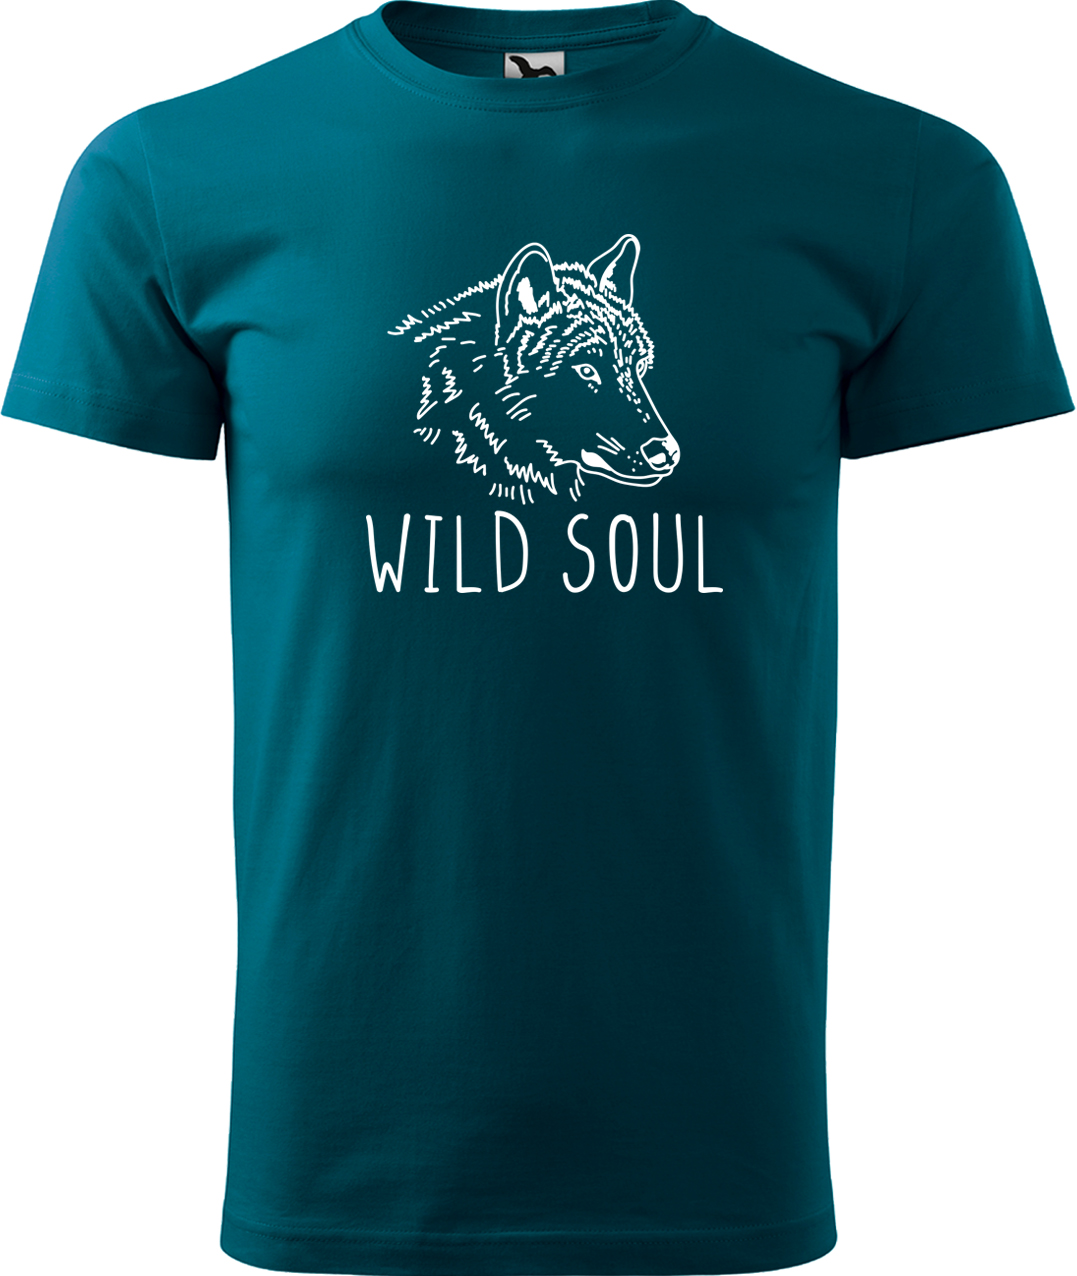 Pánské tričko s vlkem - Wild soul Velikost: S, Barva: Petrolejová (93), Střih: pánský